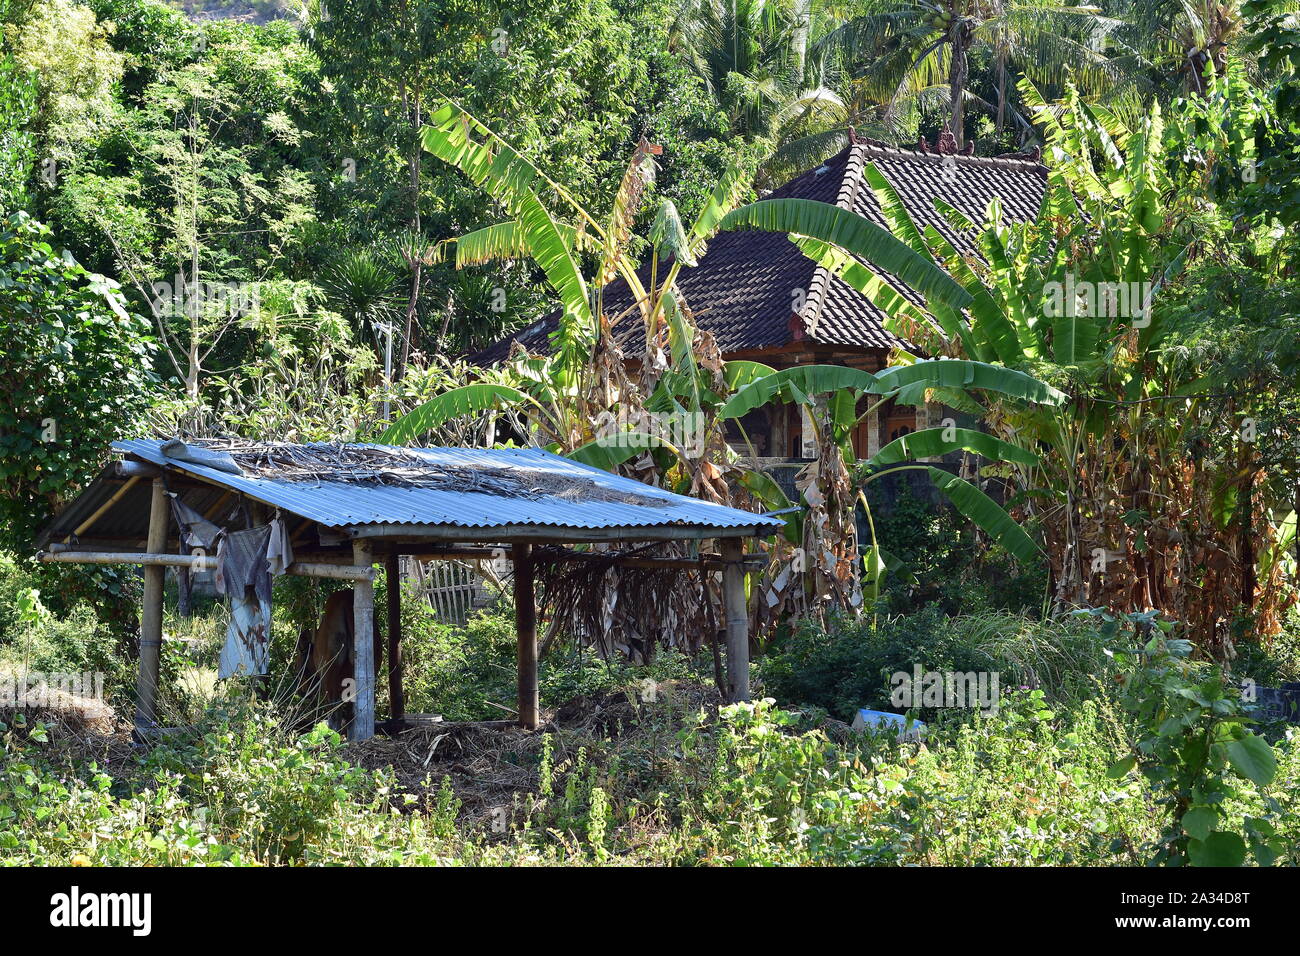 Fattoria mucca riparo fatto di poli di bambù con lamiera ondulata tetto tra vegetazione tropicale con prevalente di piante di banana in Bali orientale. Foto Stock